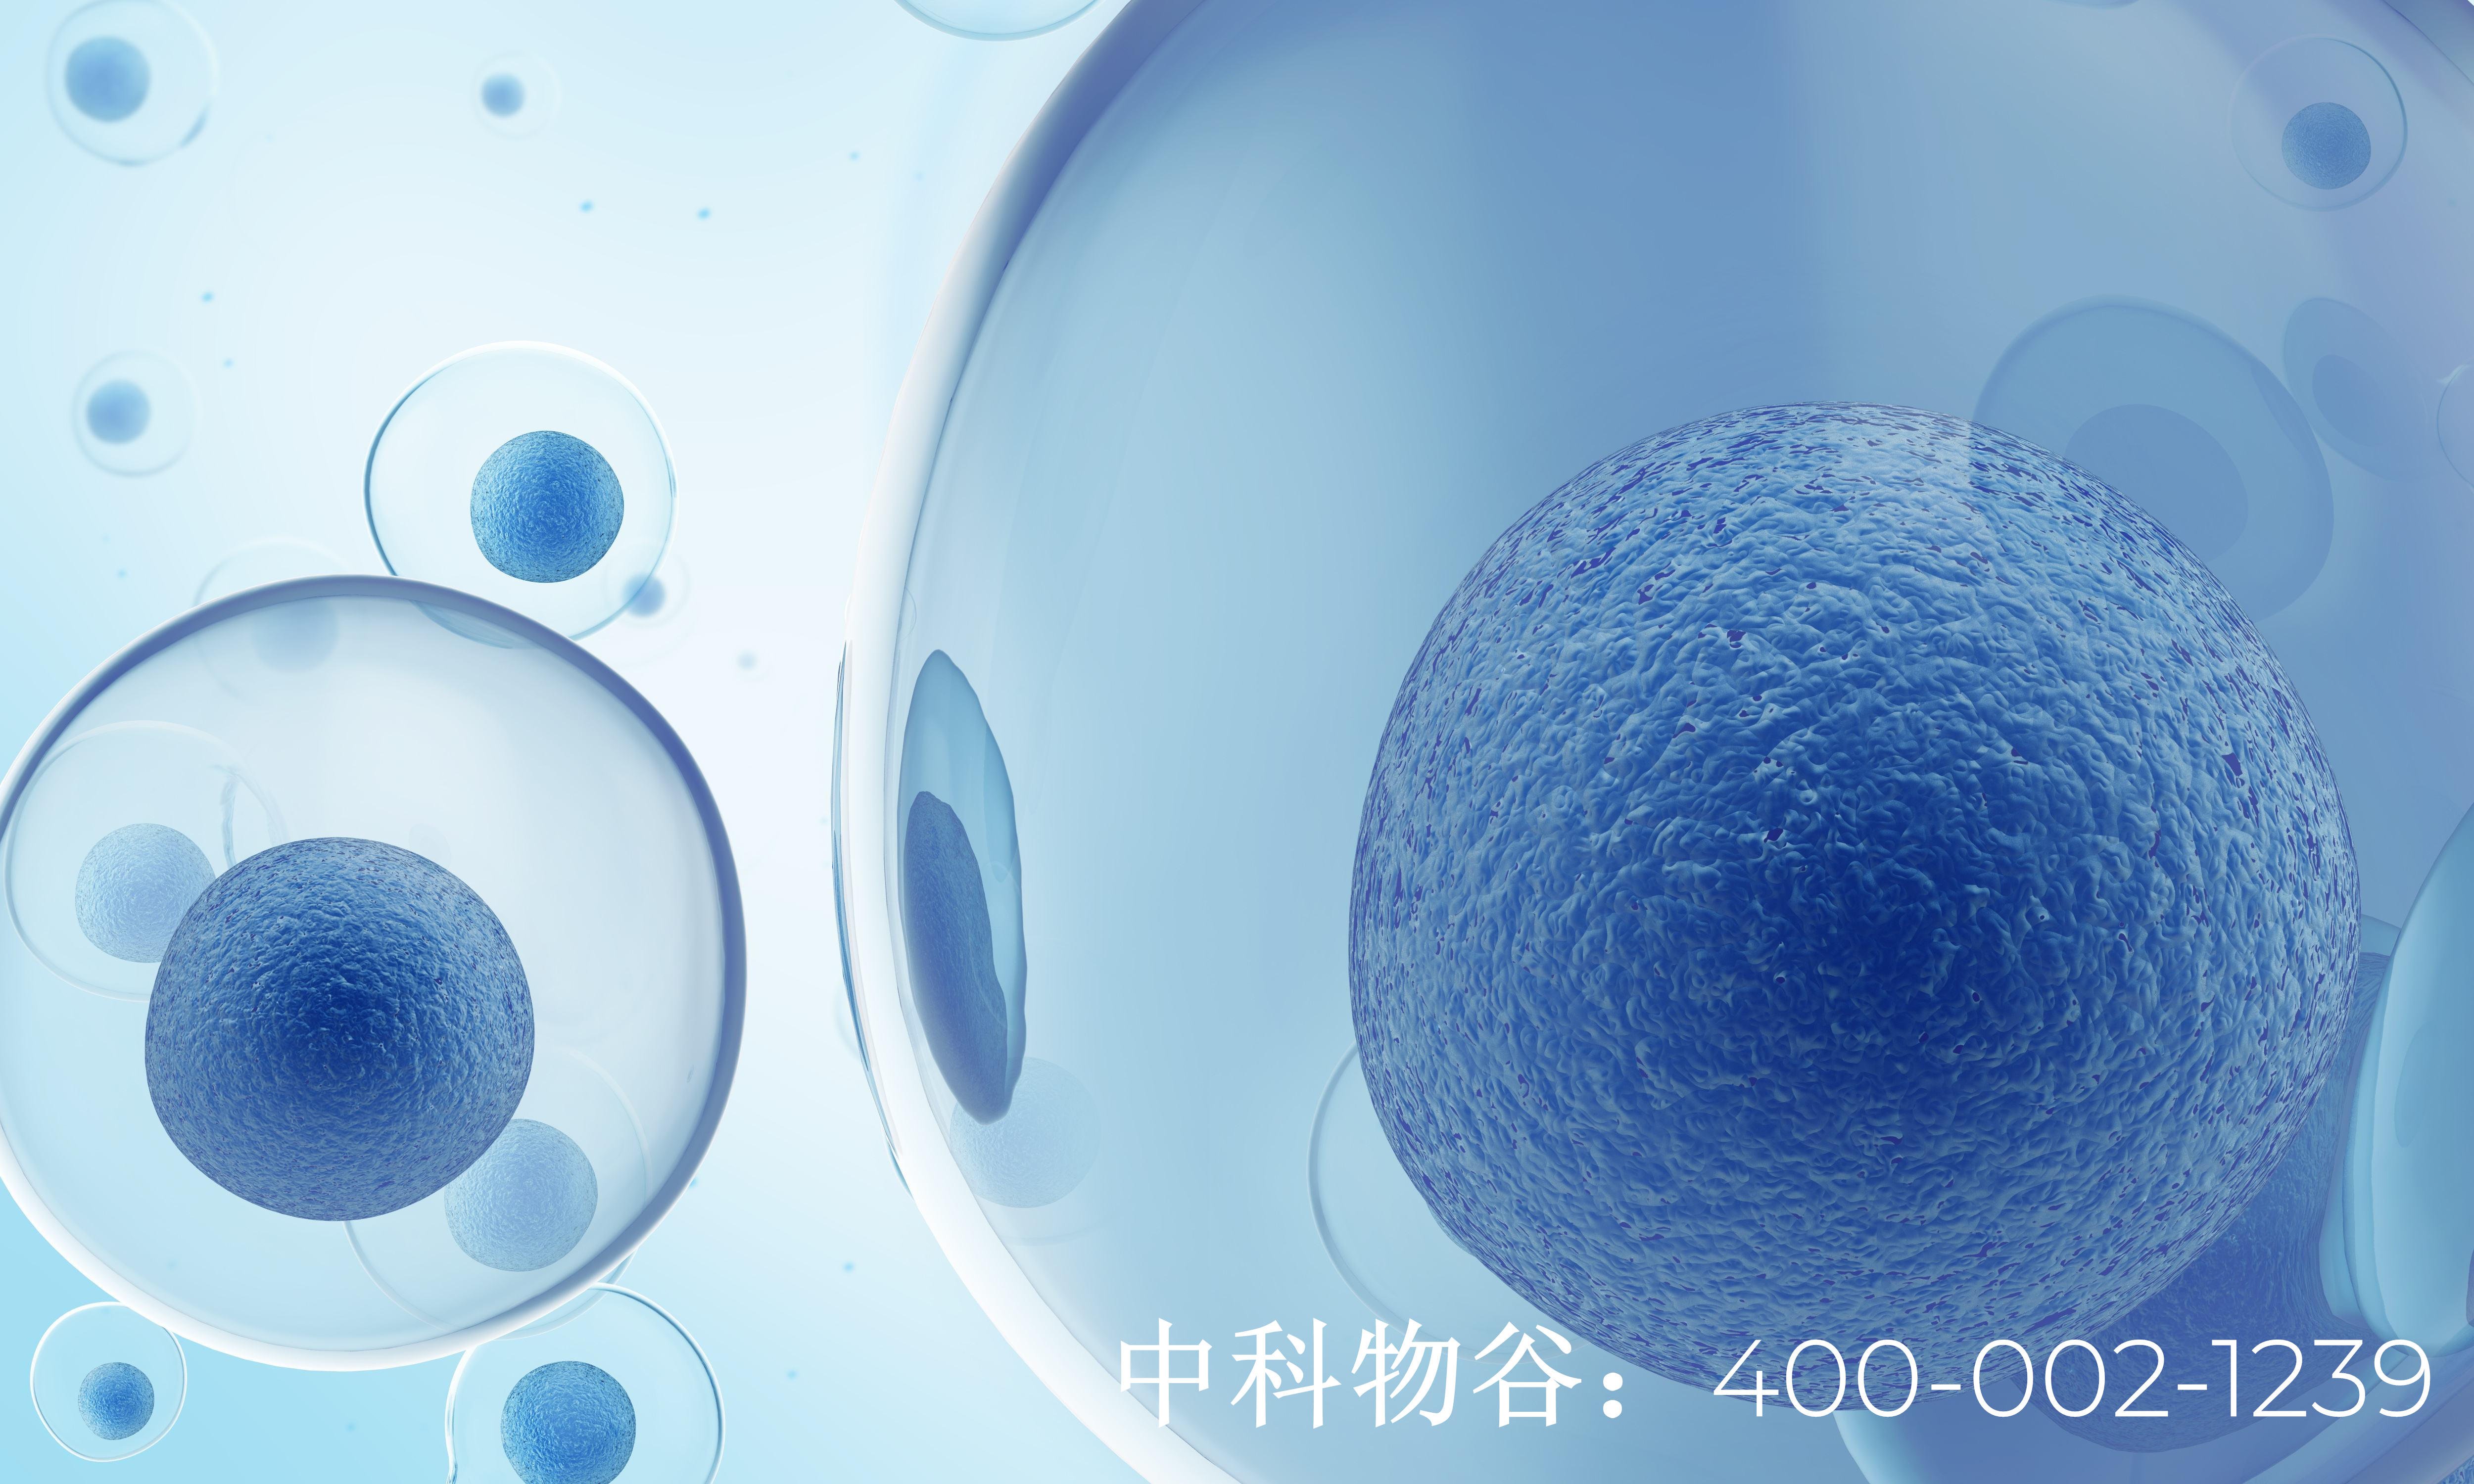 中国最好肿瘤医院-中科物谷干细胞